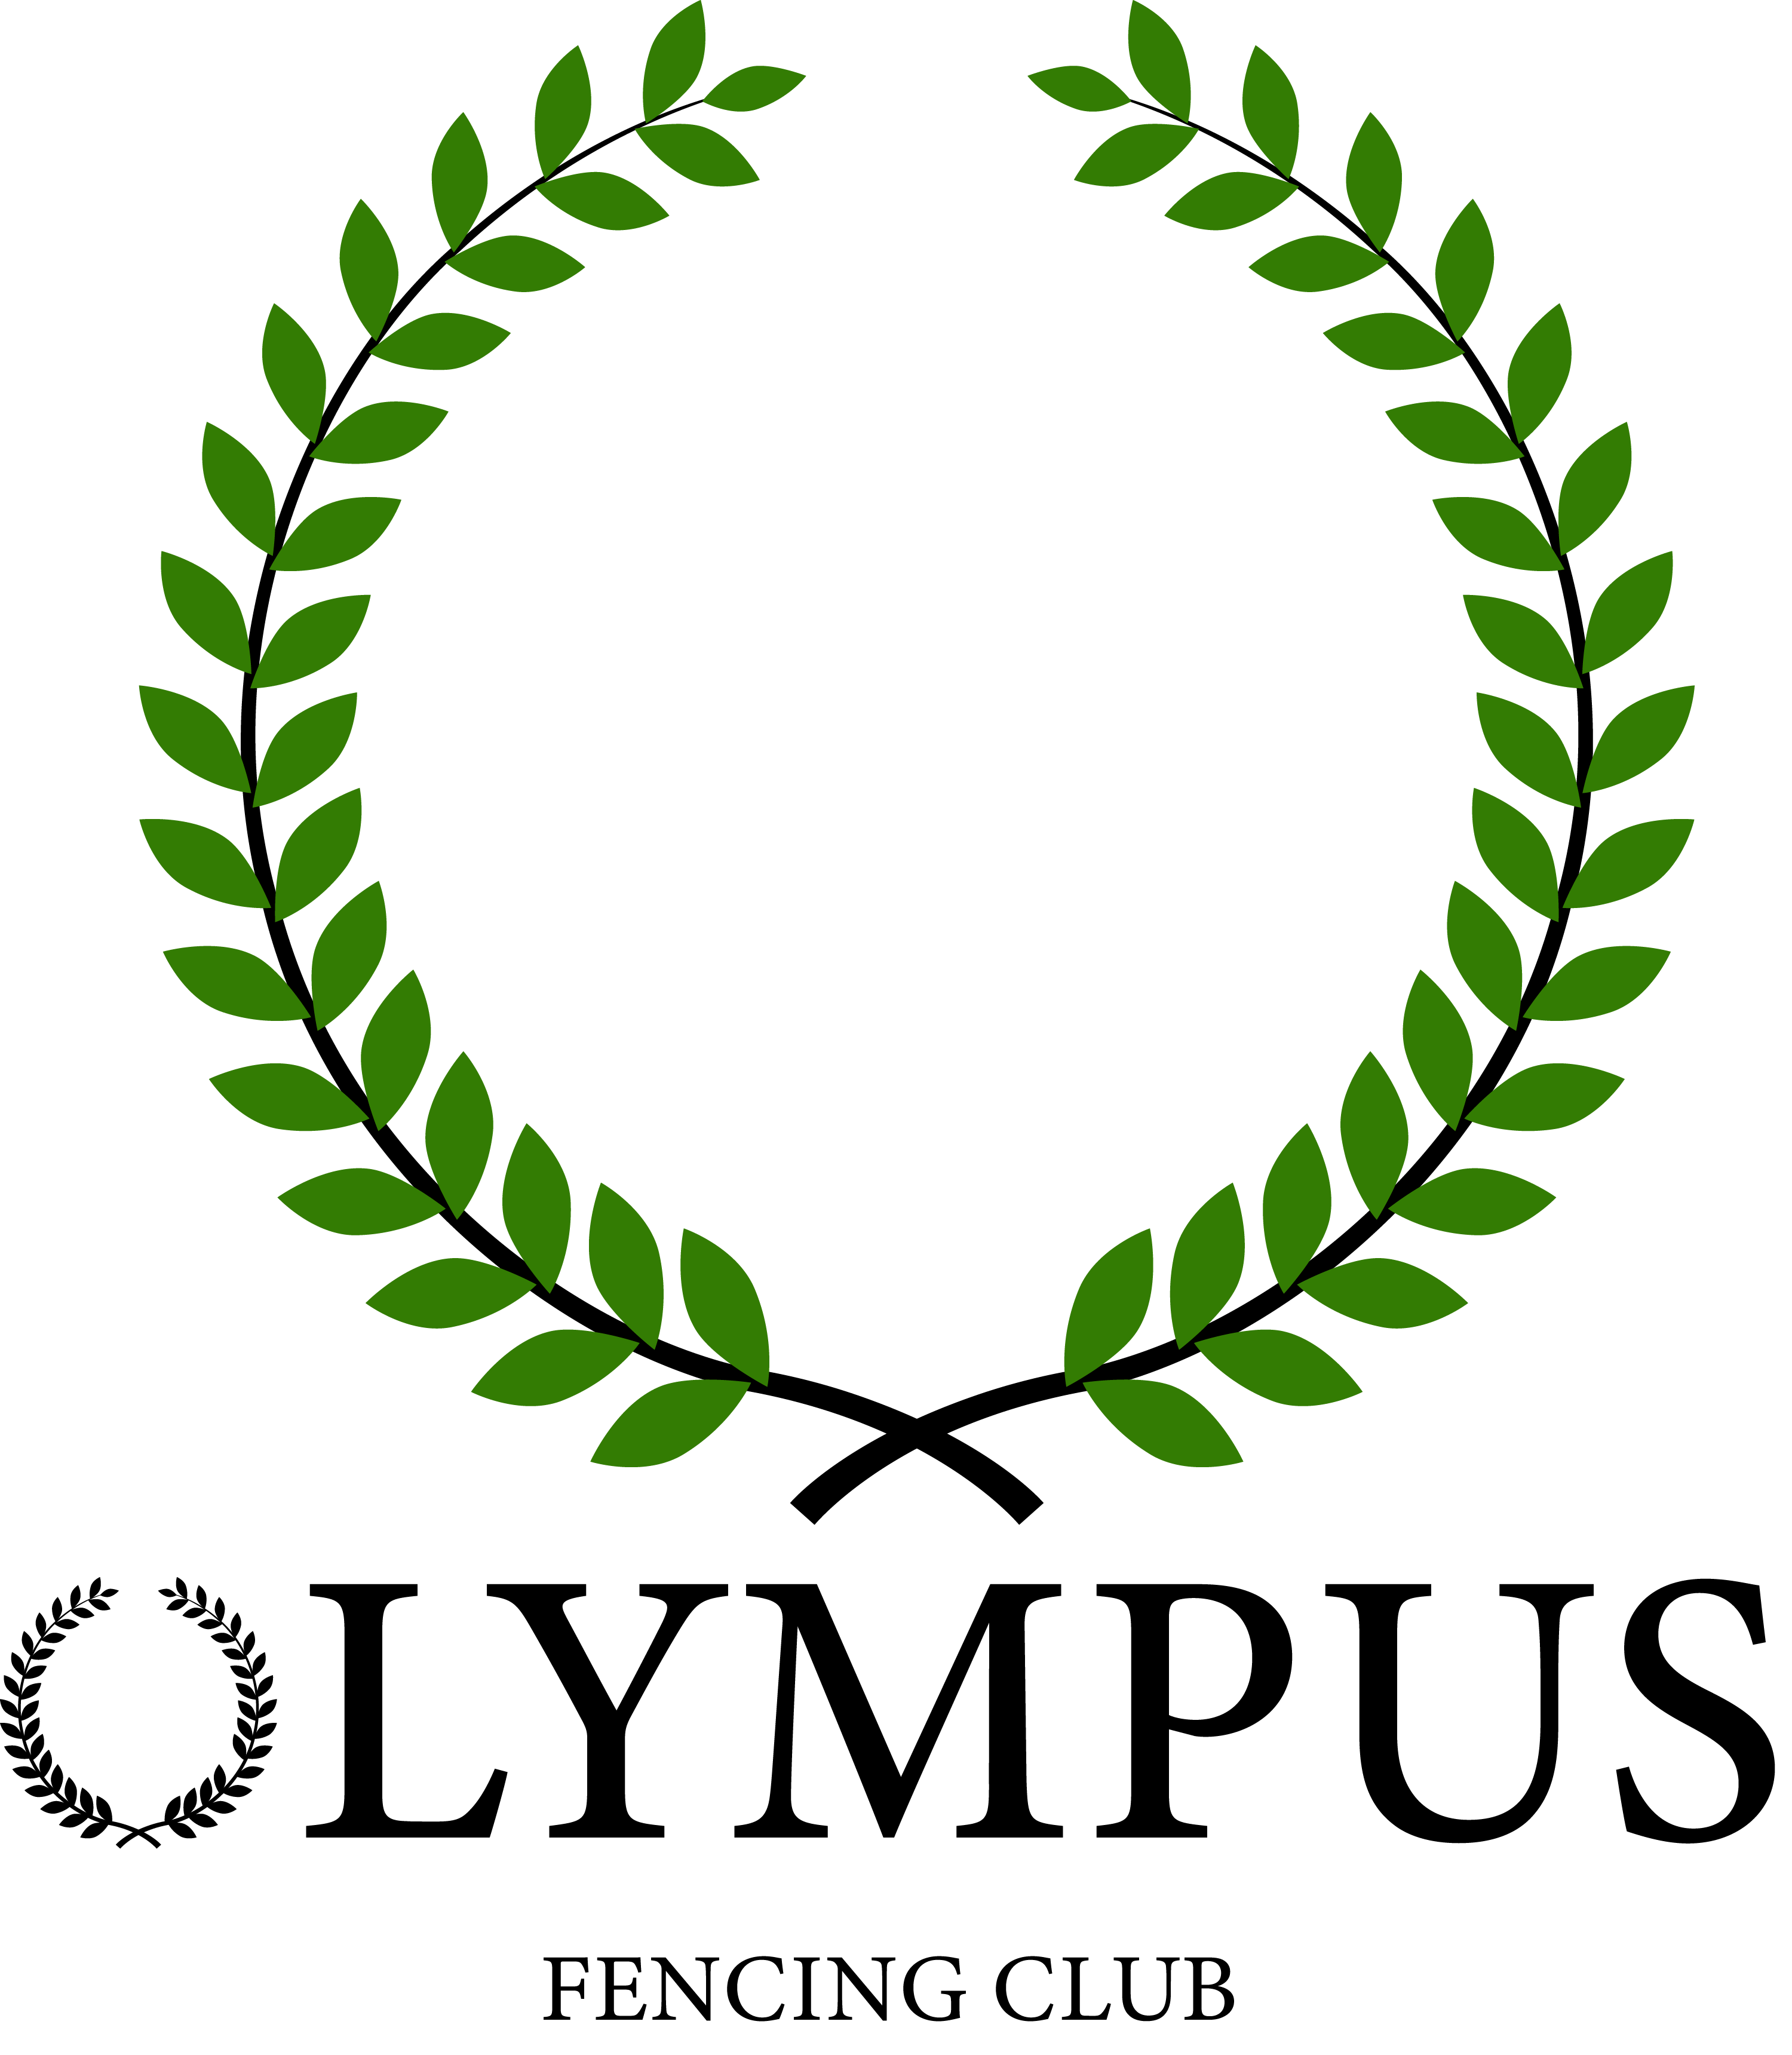 Olympus Fencing Club logo: a green wreath above black writing that says Olympus